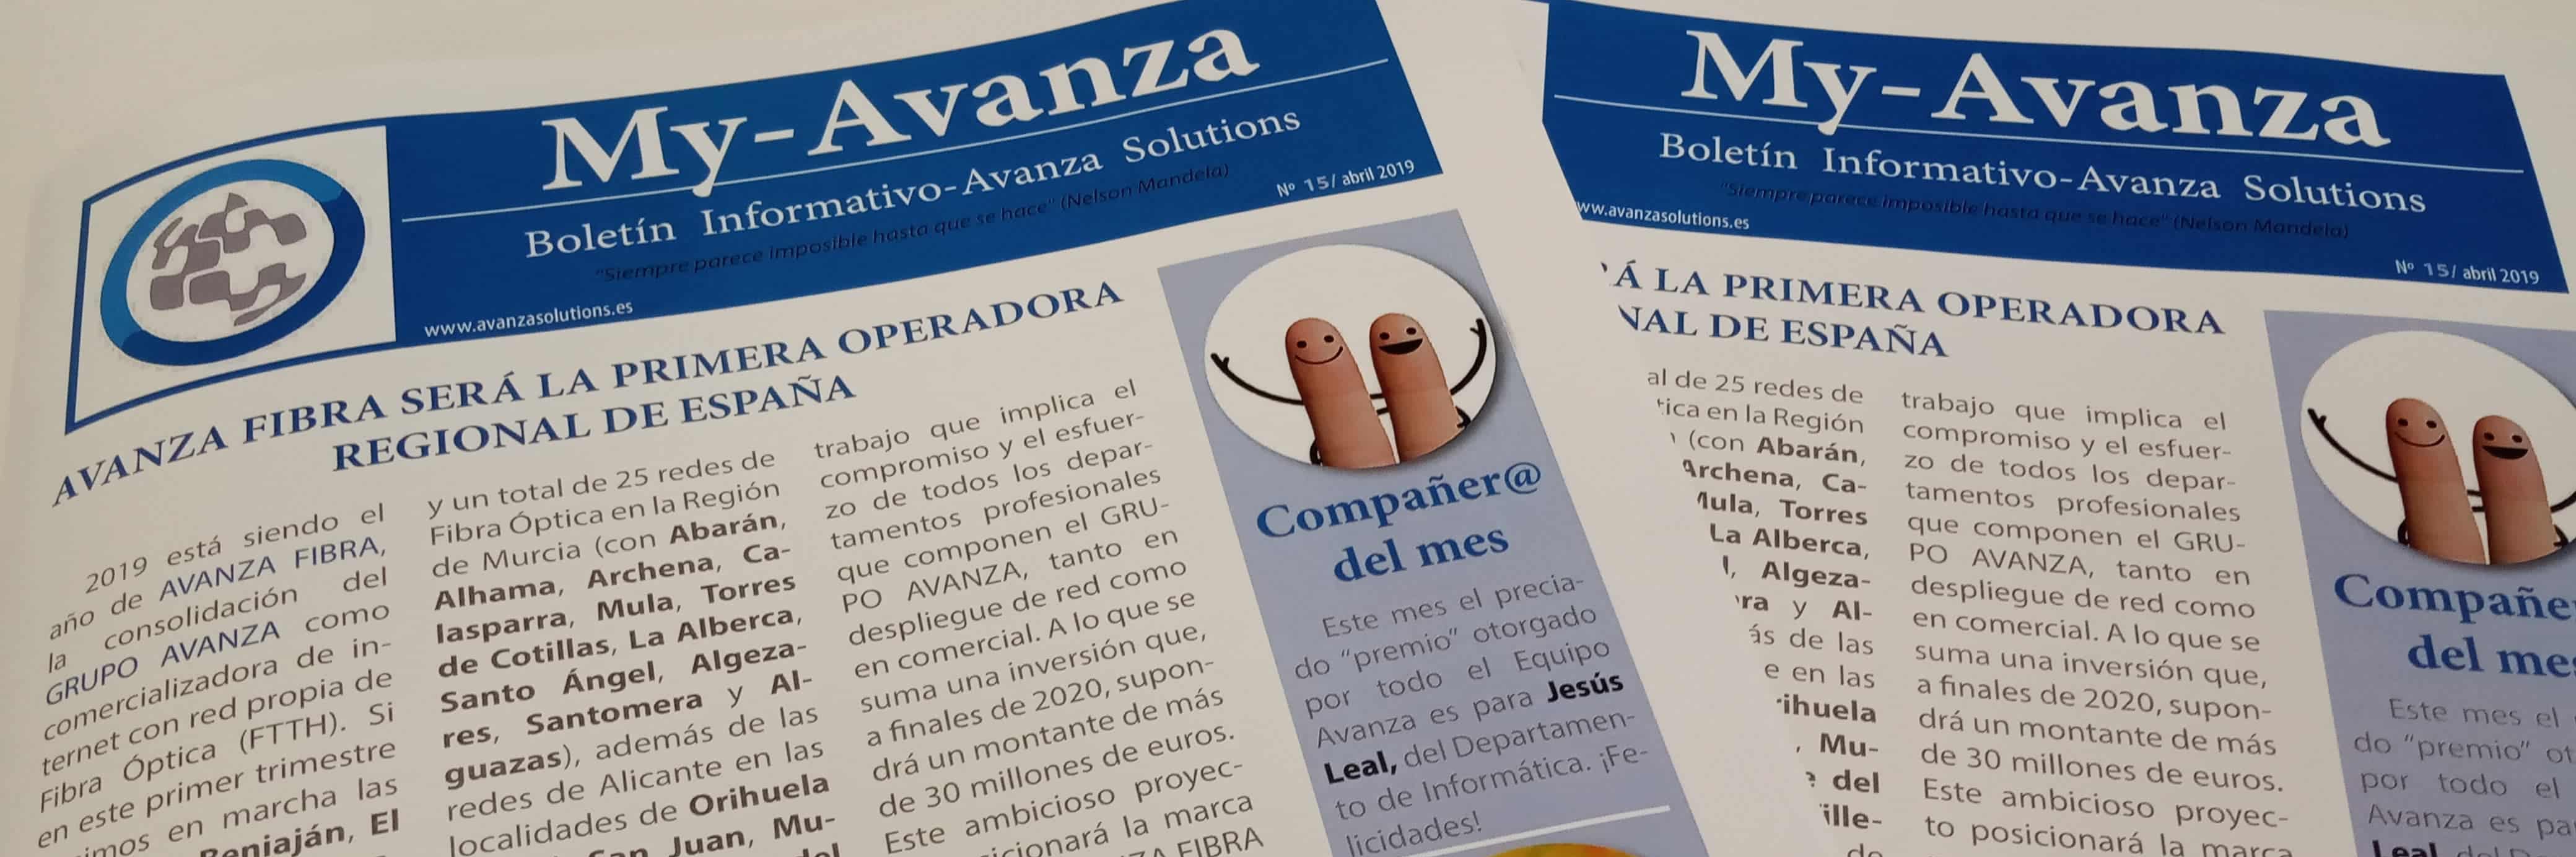 Boletín Informativo Grupo Avanza